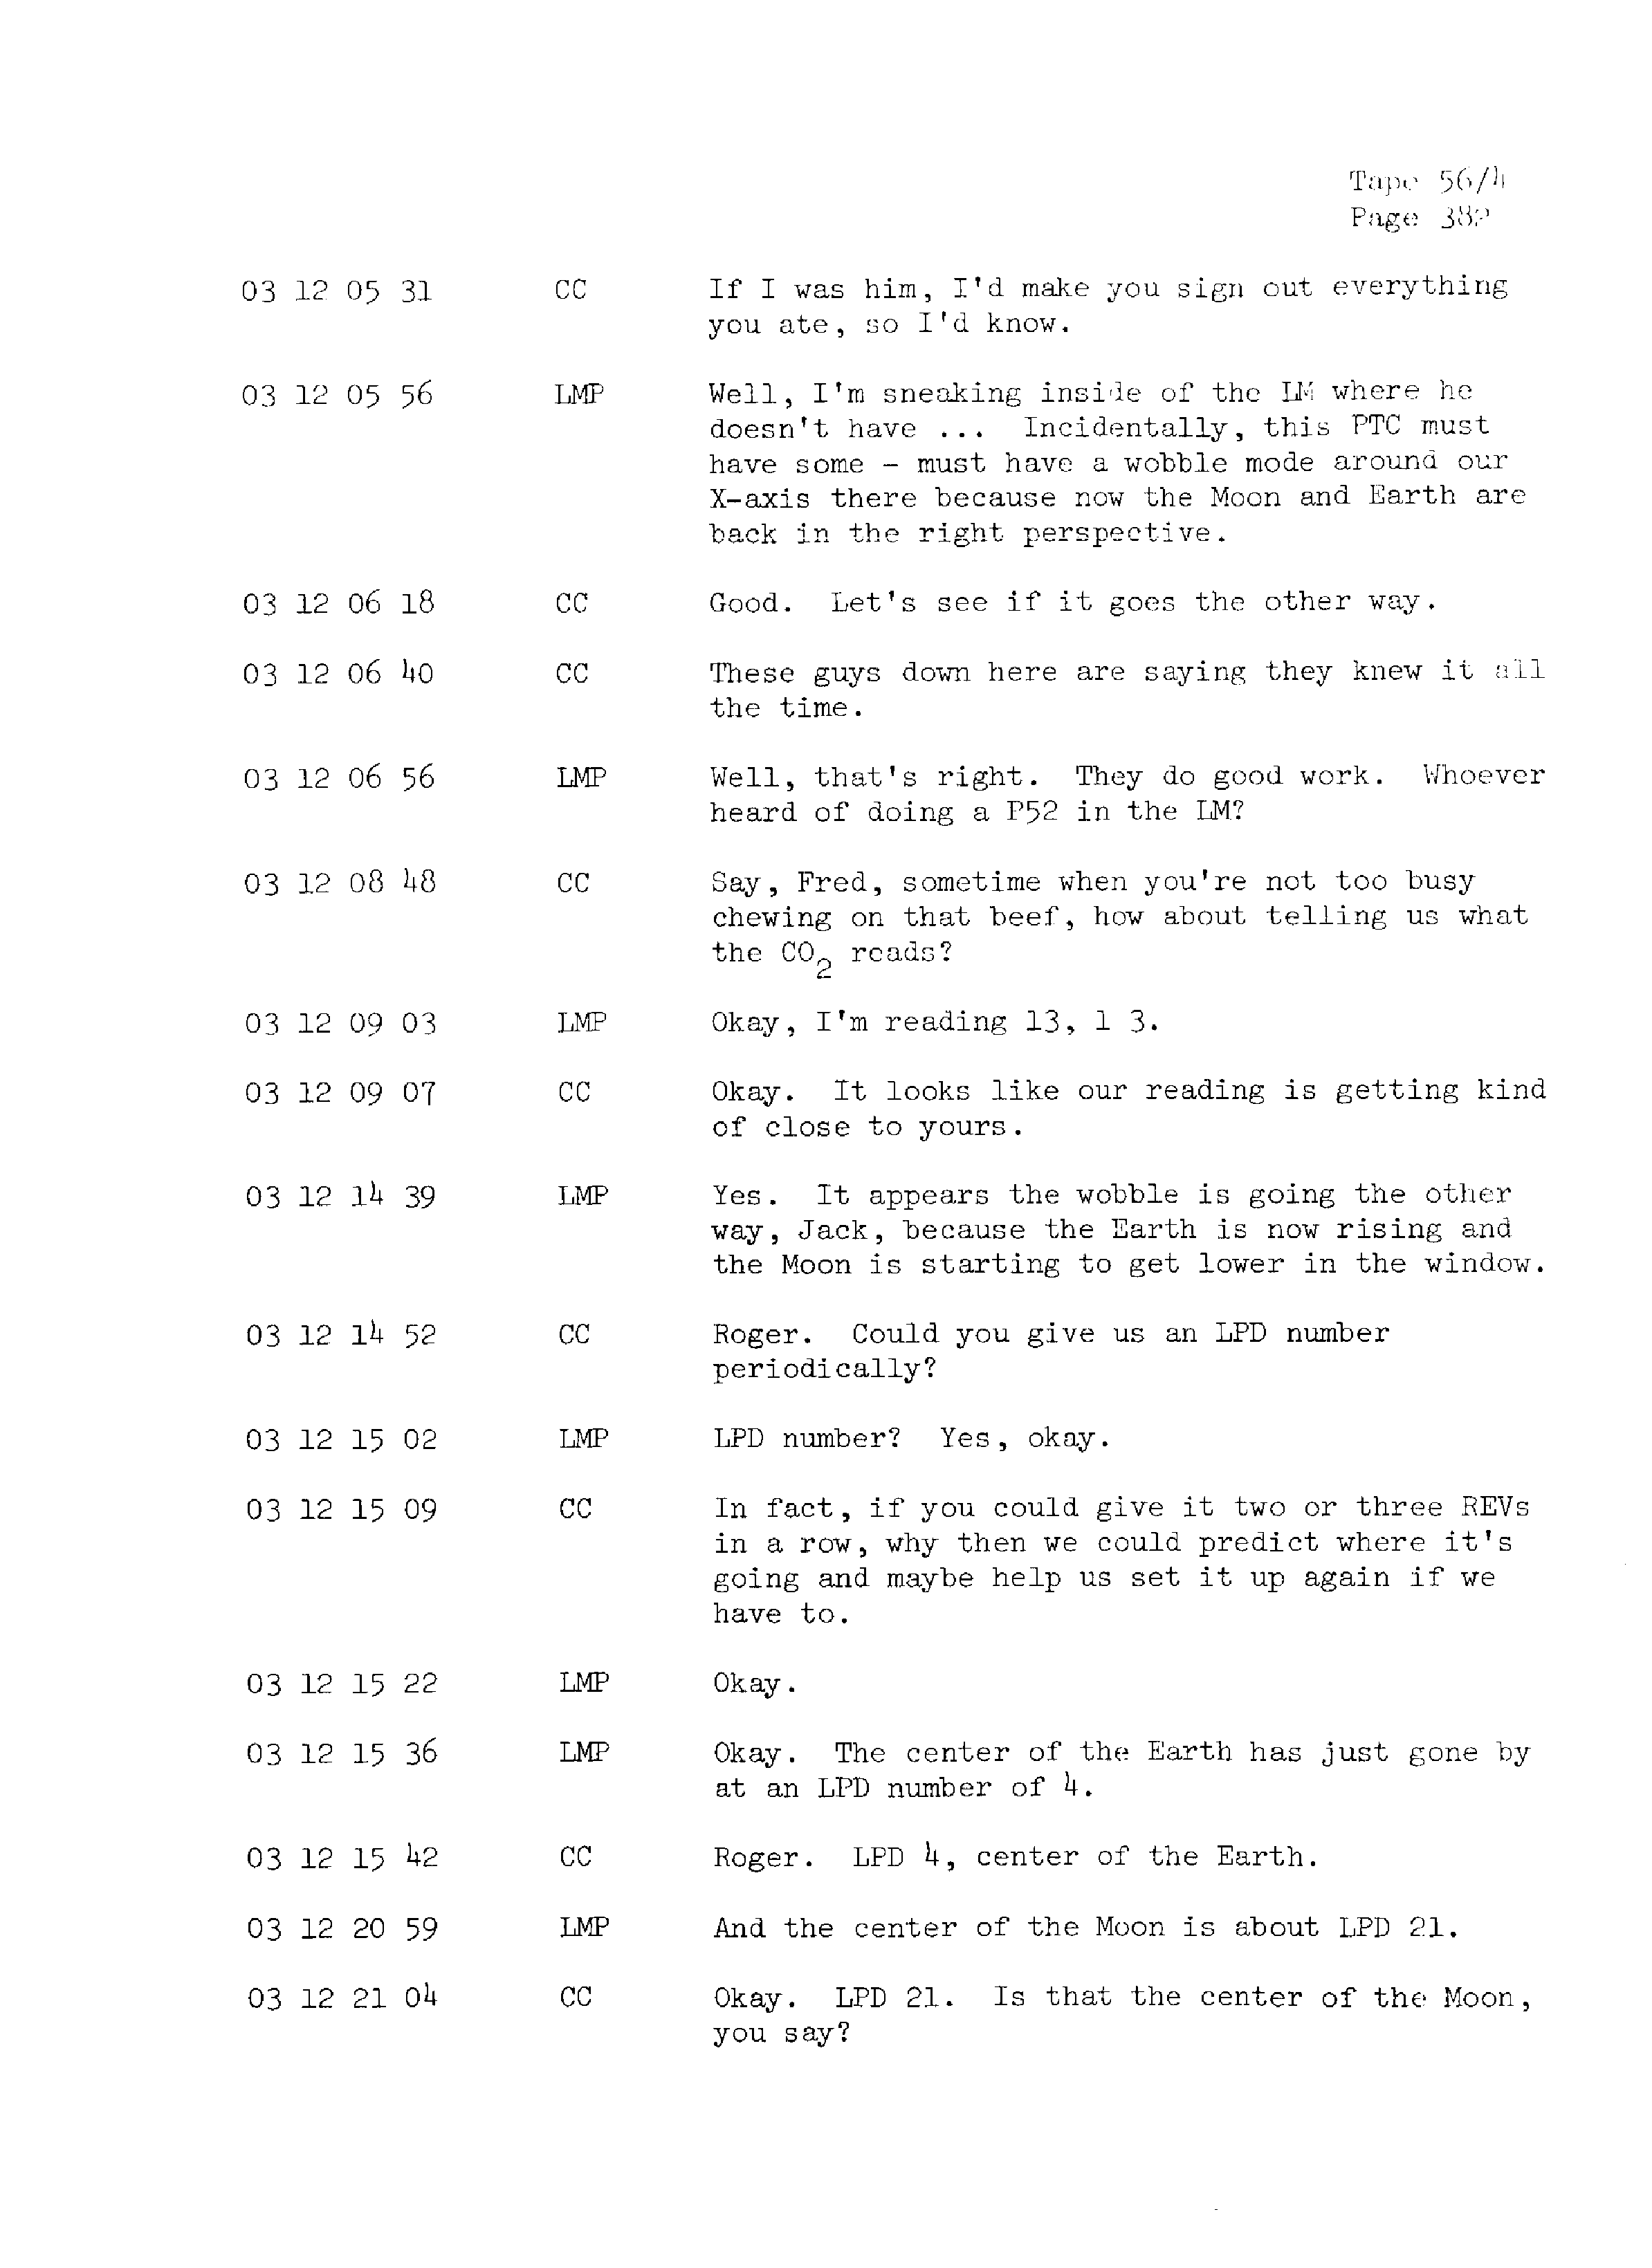 Page 389 of Apollo 13’s original transcript